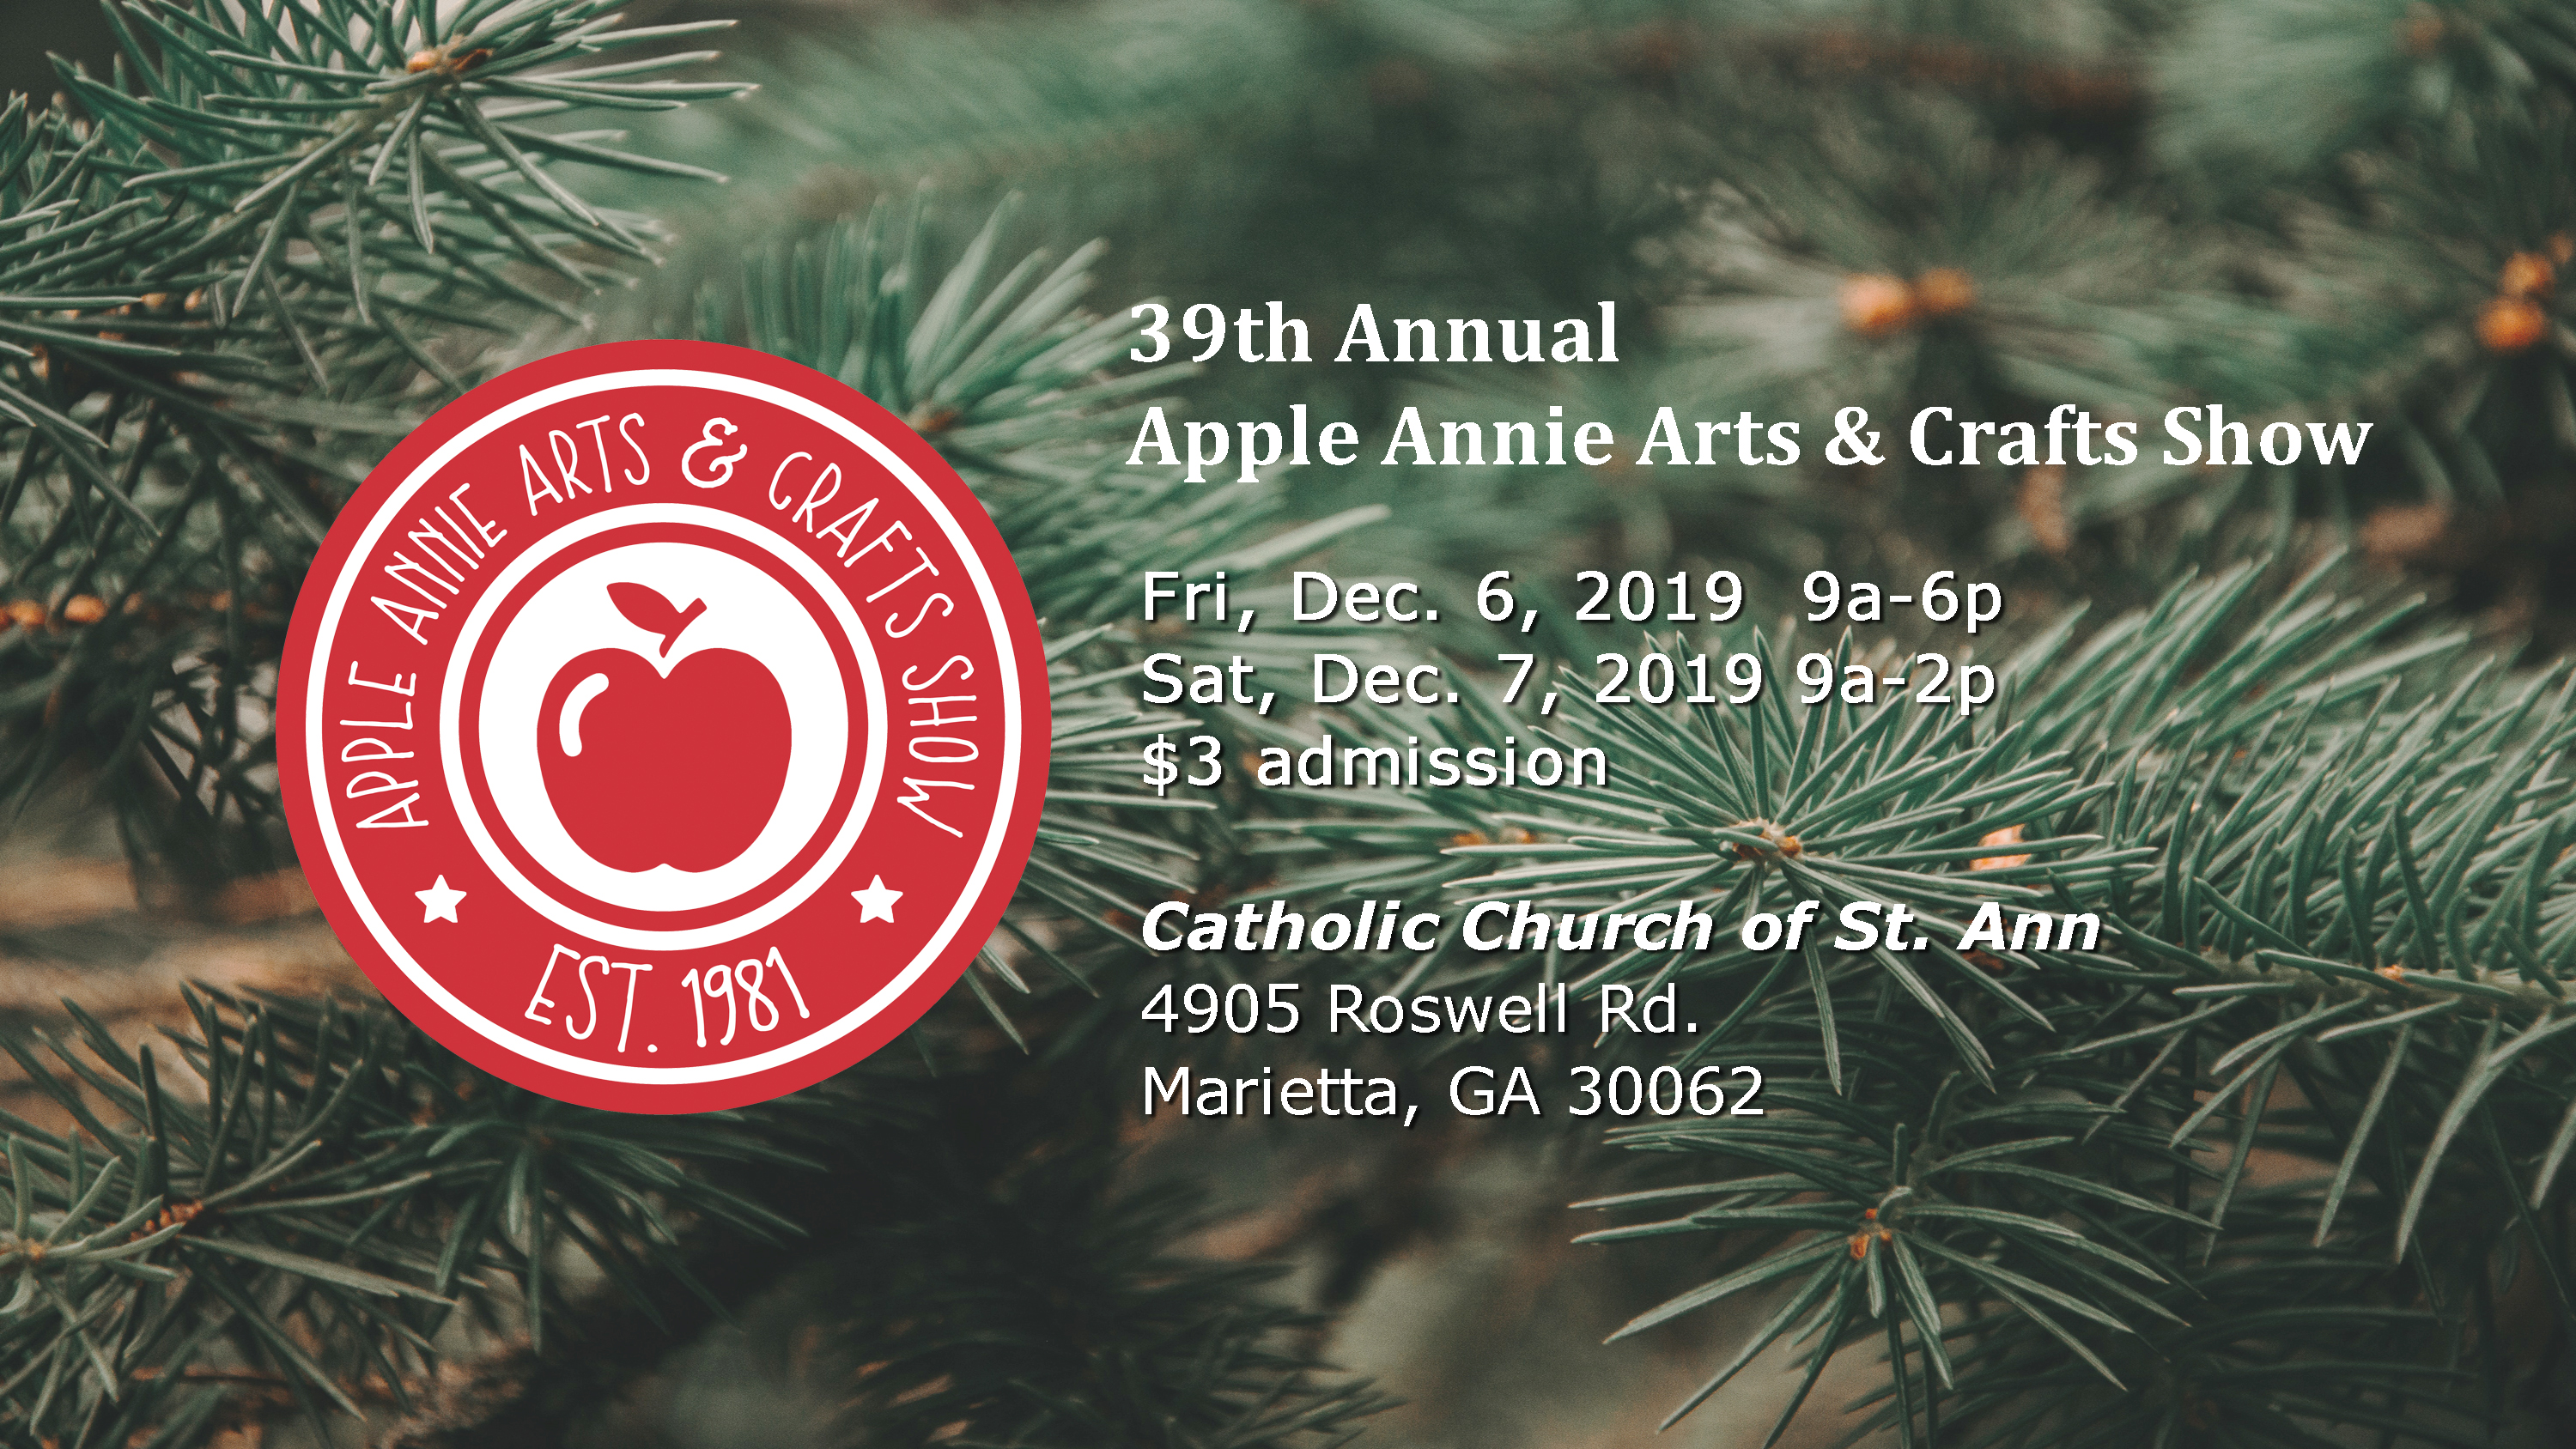 2019 Apple Annie Arts & Crafts Show